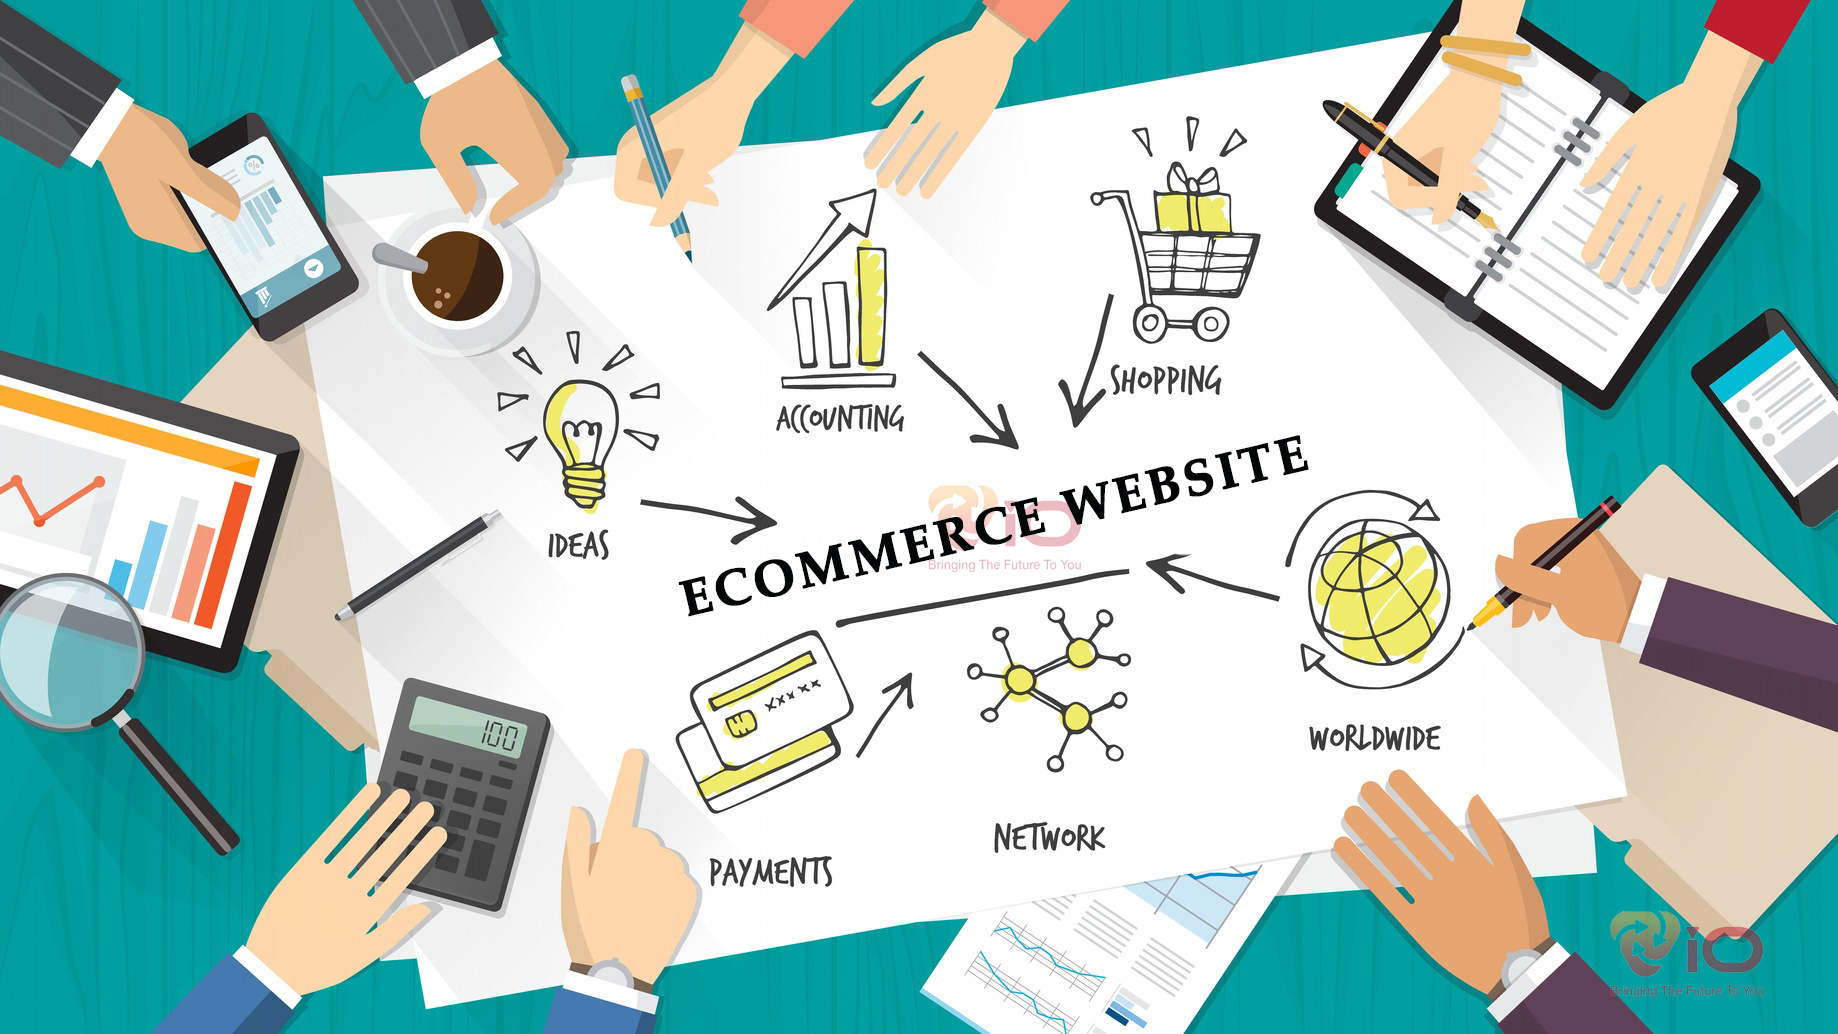 Seo website thương mại điện tử bán hàng cần có quy trình và theo kế hoạch